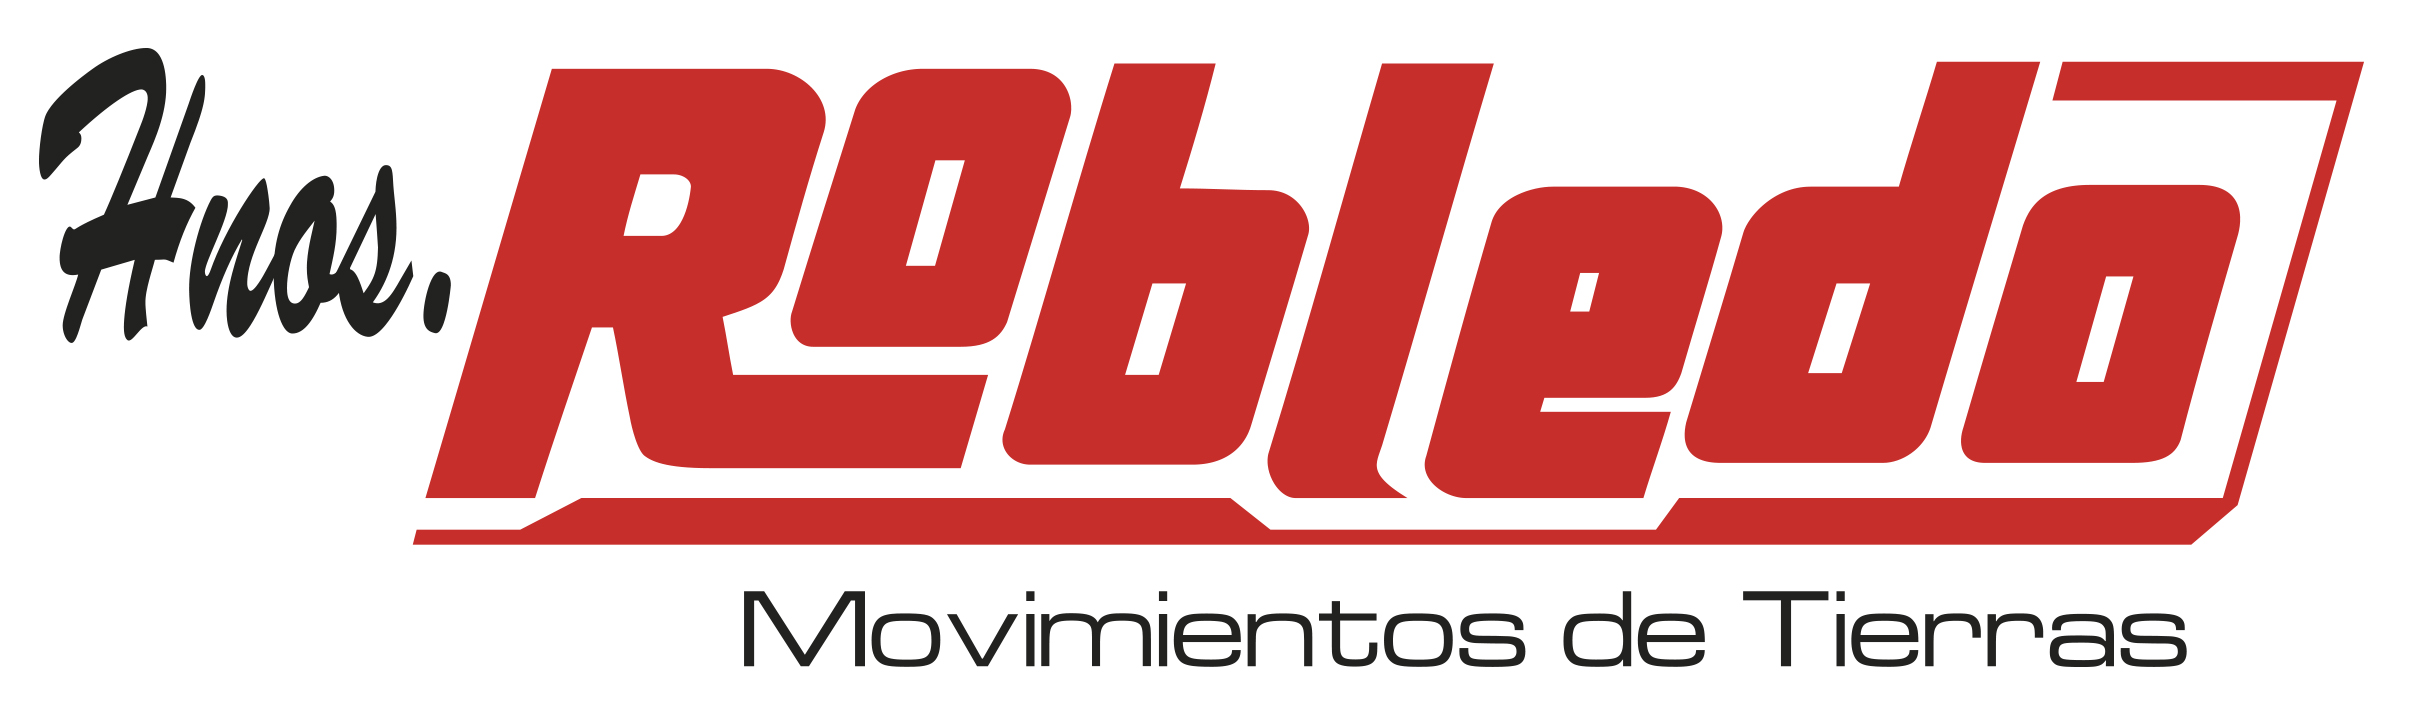 Movimientos de tierra Hermanos Robledo Logo